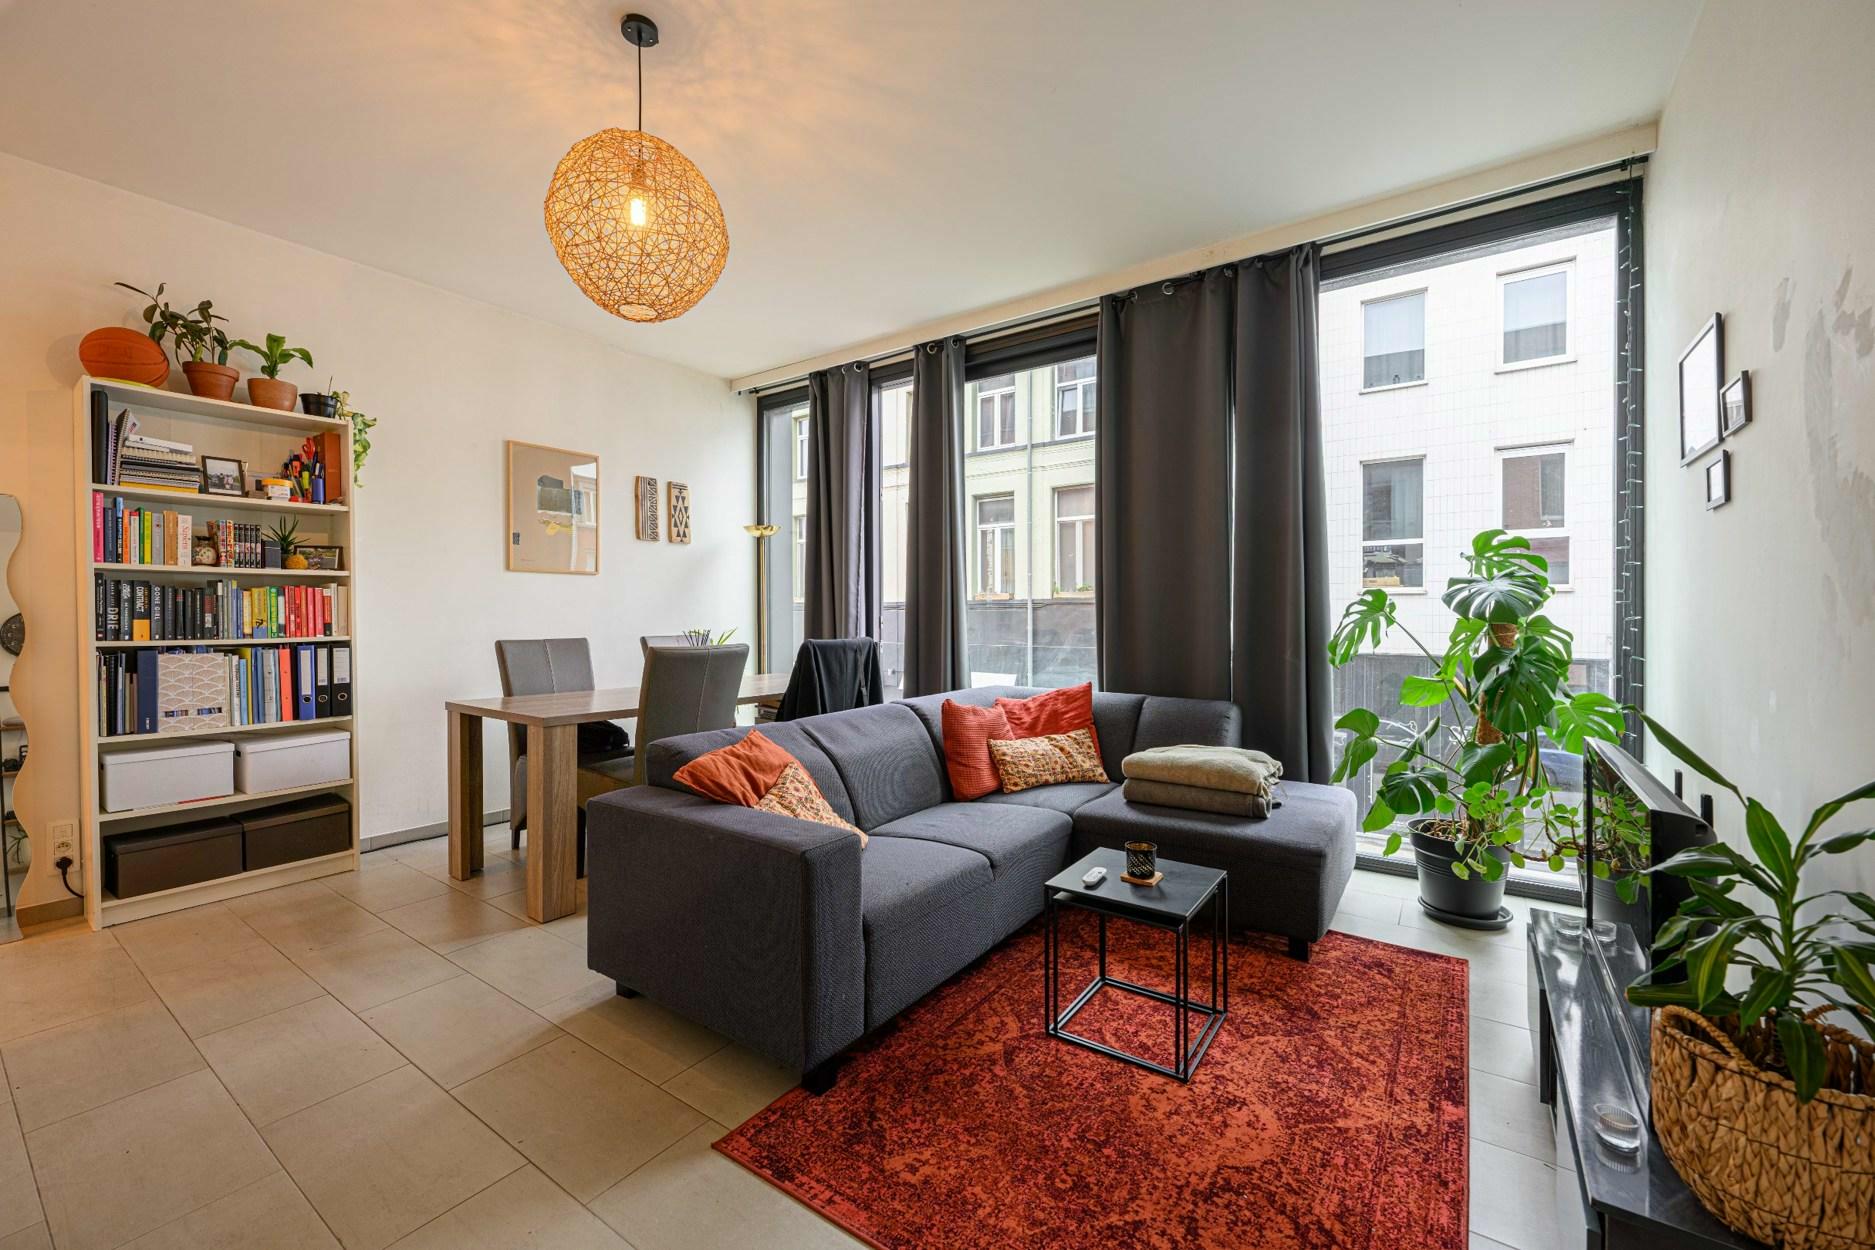 Recent appartement op gunstige locatie te Antwerpen!